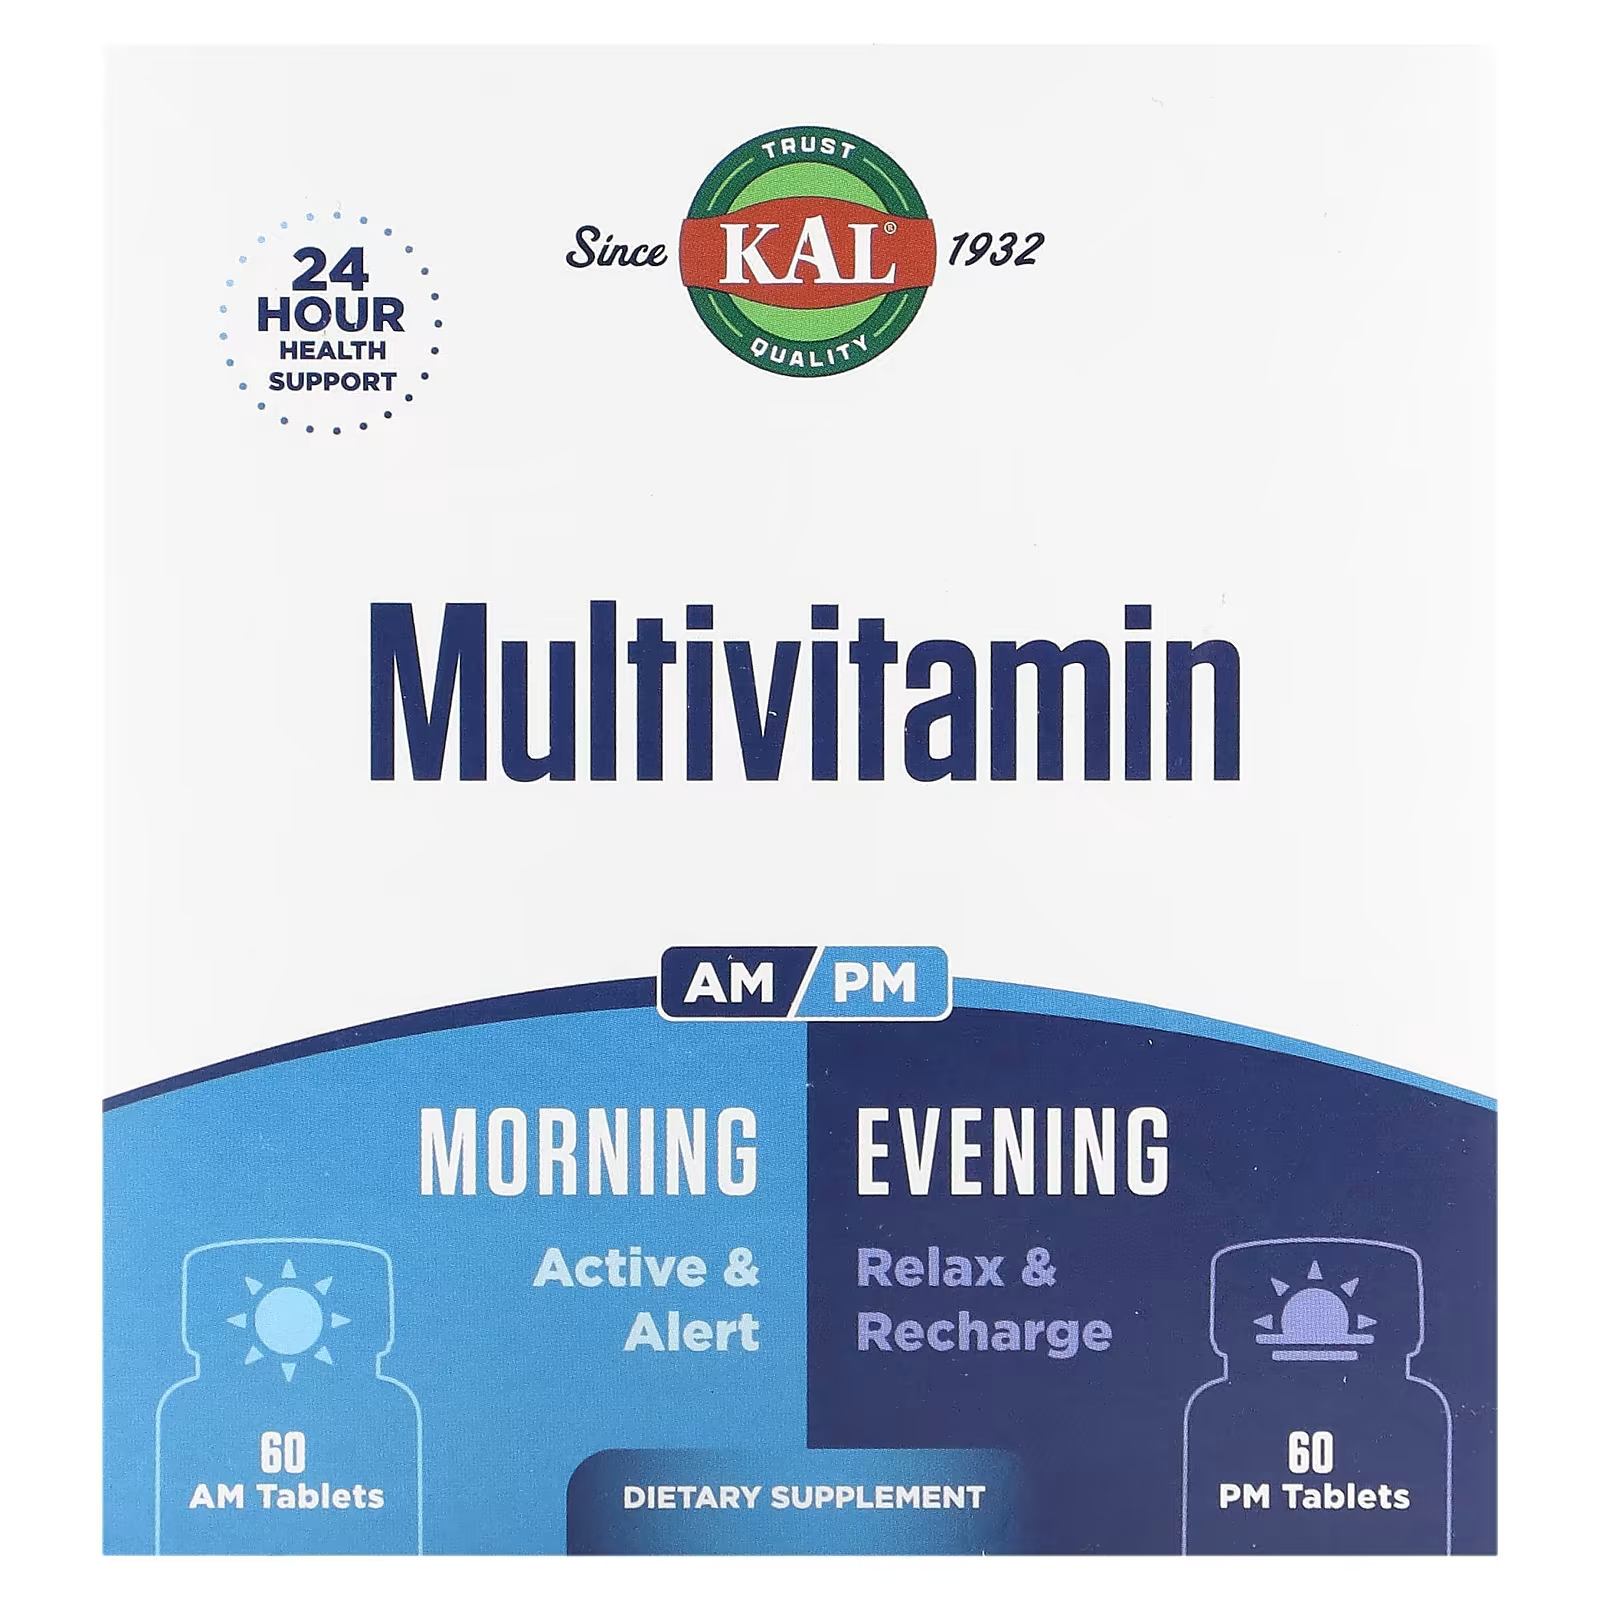 Мультивитамины Kal утром и вечером, 2 упаковки по 60 таблеток